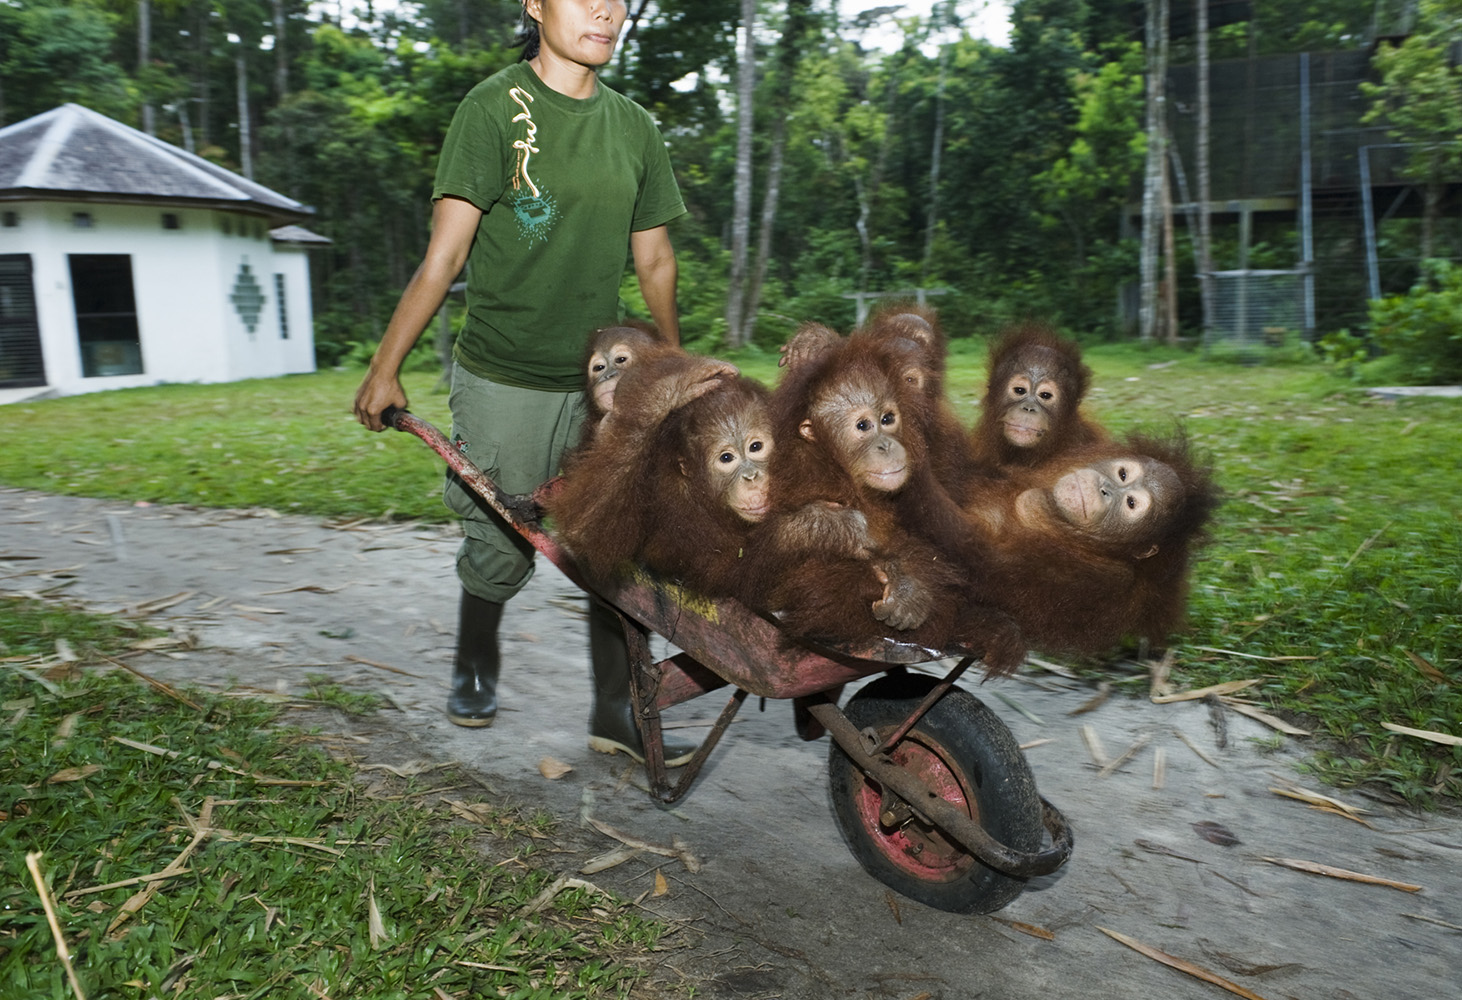 Дальней родственник человека. Сепилок реабилитационный центр орангутанов. Фото . Центр реабилитации орангутанов Сепилок. Орангутанг управляет машиной для гольфа. Пацаны на трудах делают табуретки орангутанг.